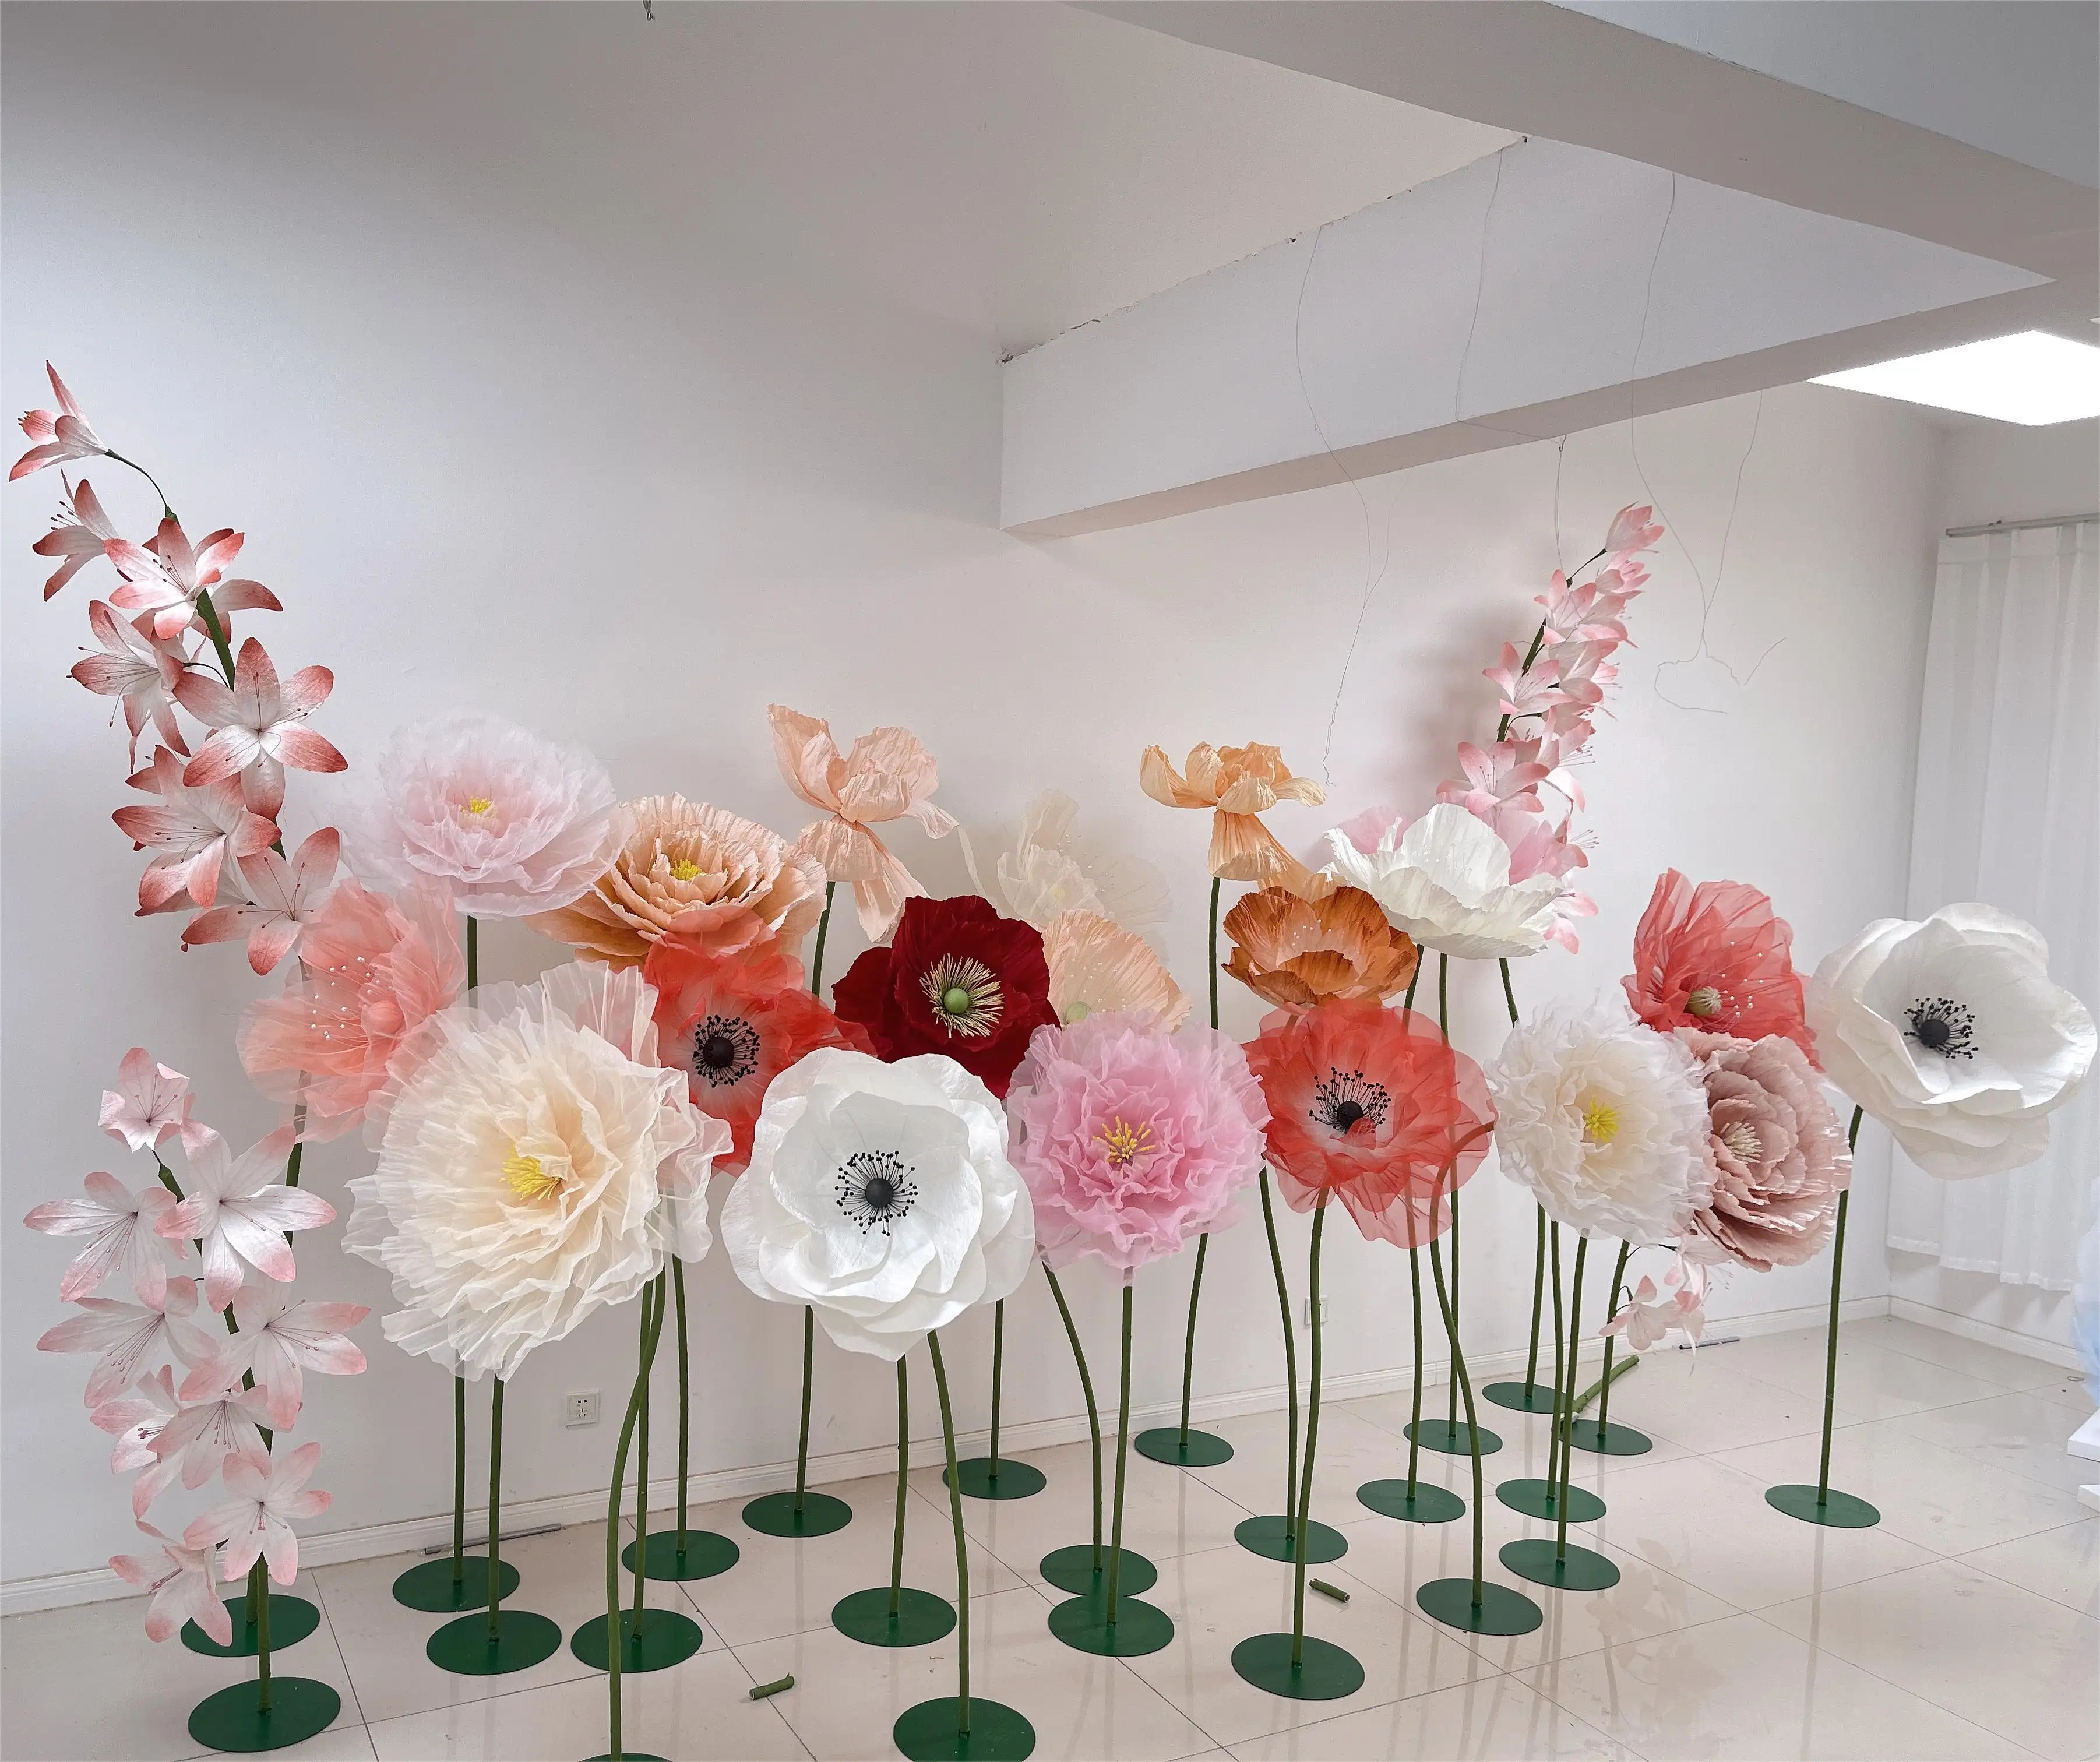 Individuelle Farbe große Seidenblumen künstliche riesige Blumen mit Stiel für Hochzeit Bankett Bühnendesign Fenster-Vorführungs-Deko